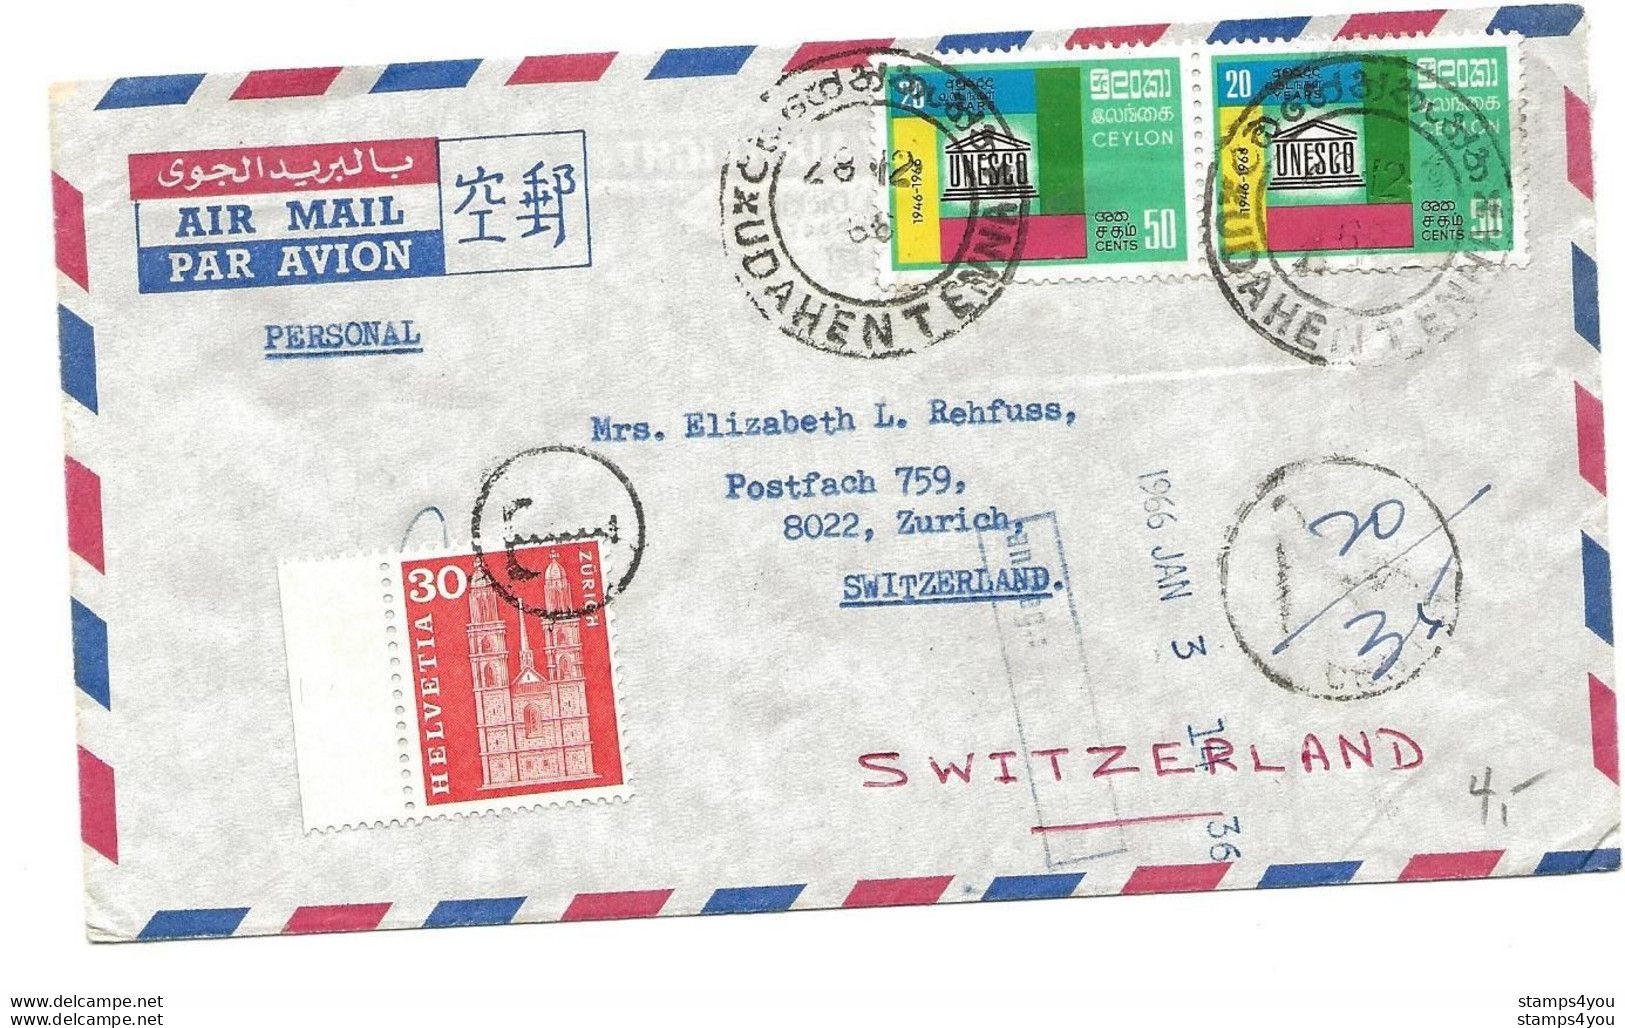 104 - 69 - Enveloppe Envoyée De Ceylon En Suisse - Timbre Suisse Avec Cachet "T" Taxe 1966 - Segnatasse